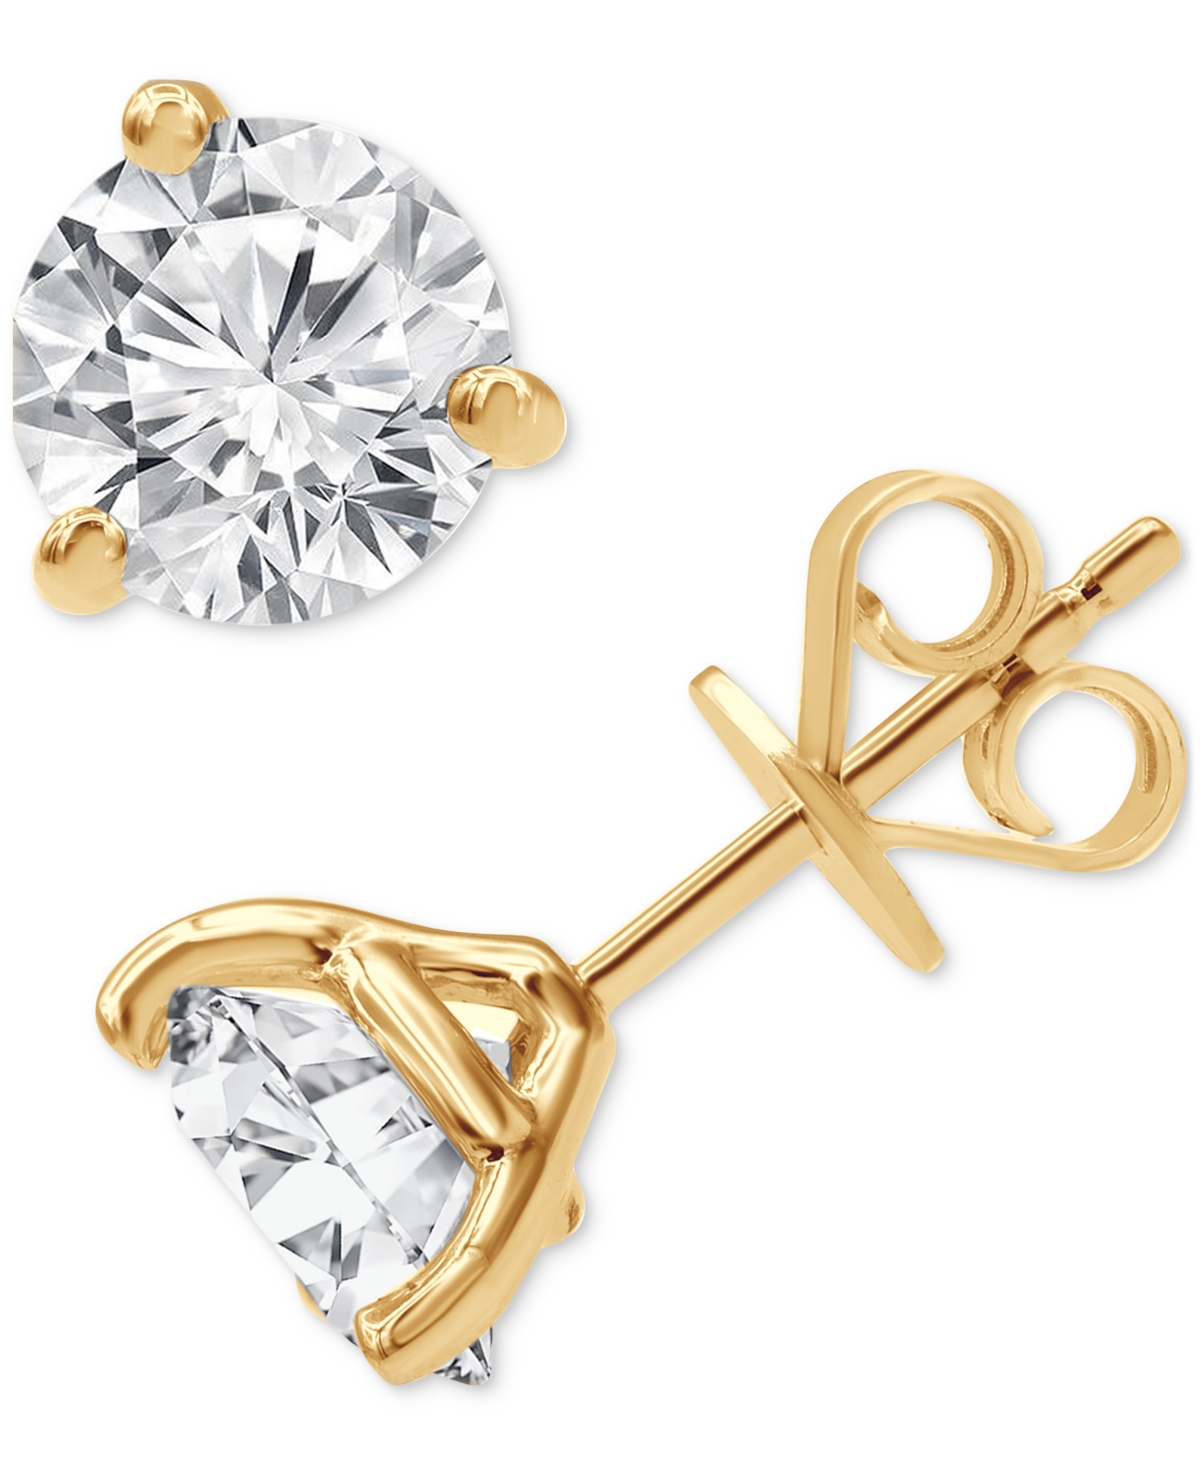 Certified Lab Grown Diamond Stud Earrings (3 ct. t.w.) in 14k Gold - Rose Gold